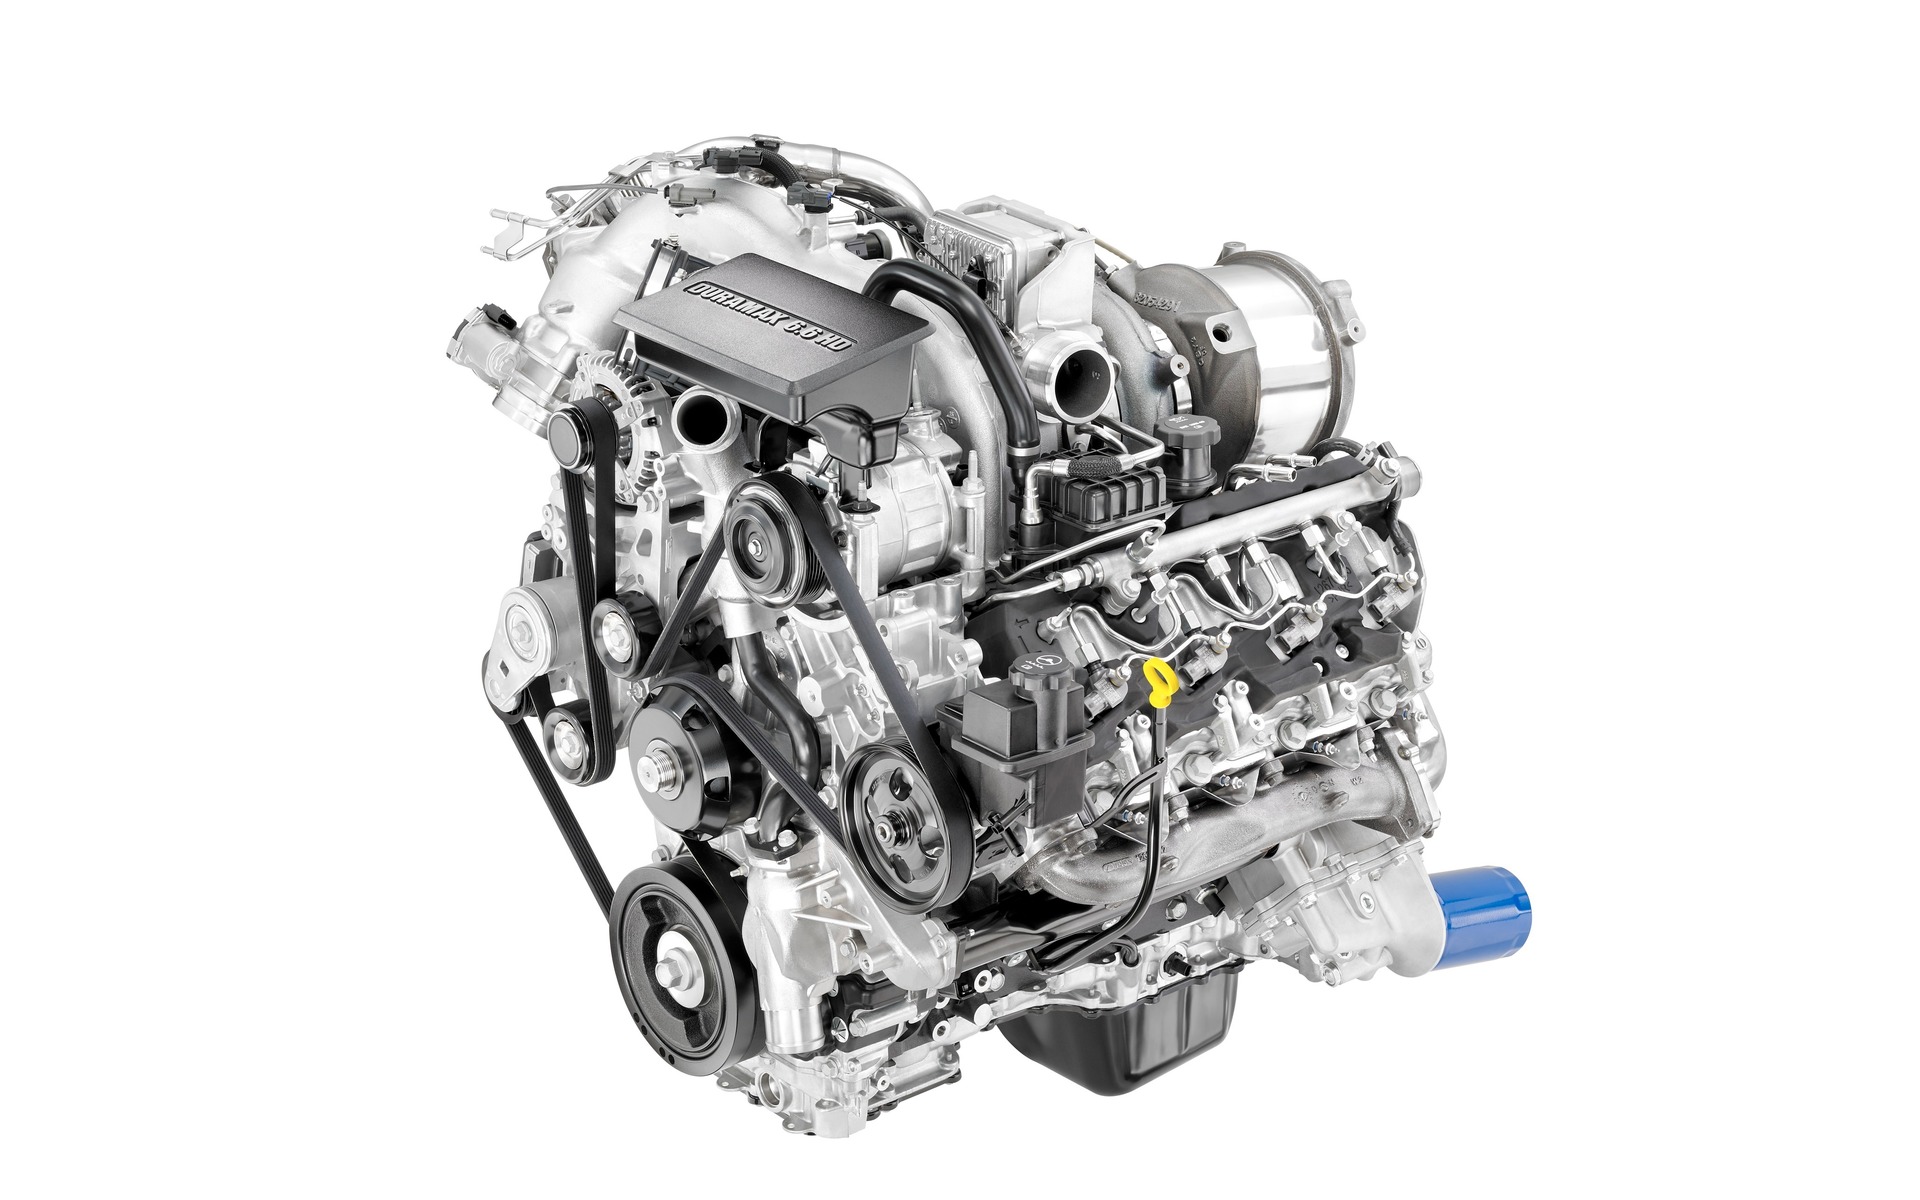 6.6-litre Duramax turbo-diesel V8 engine